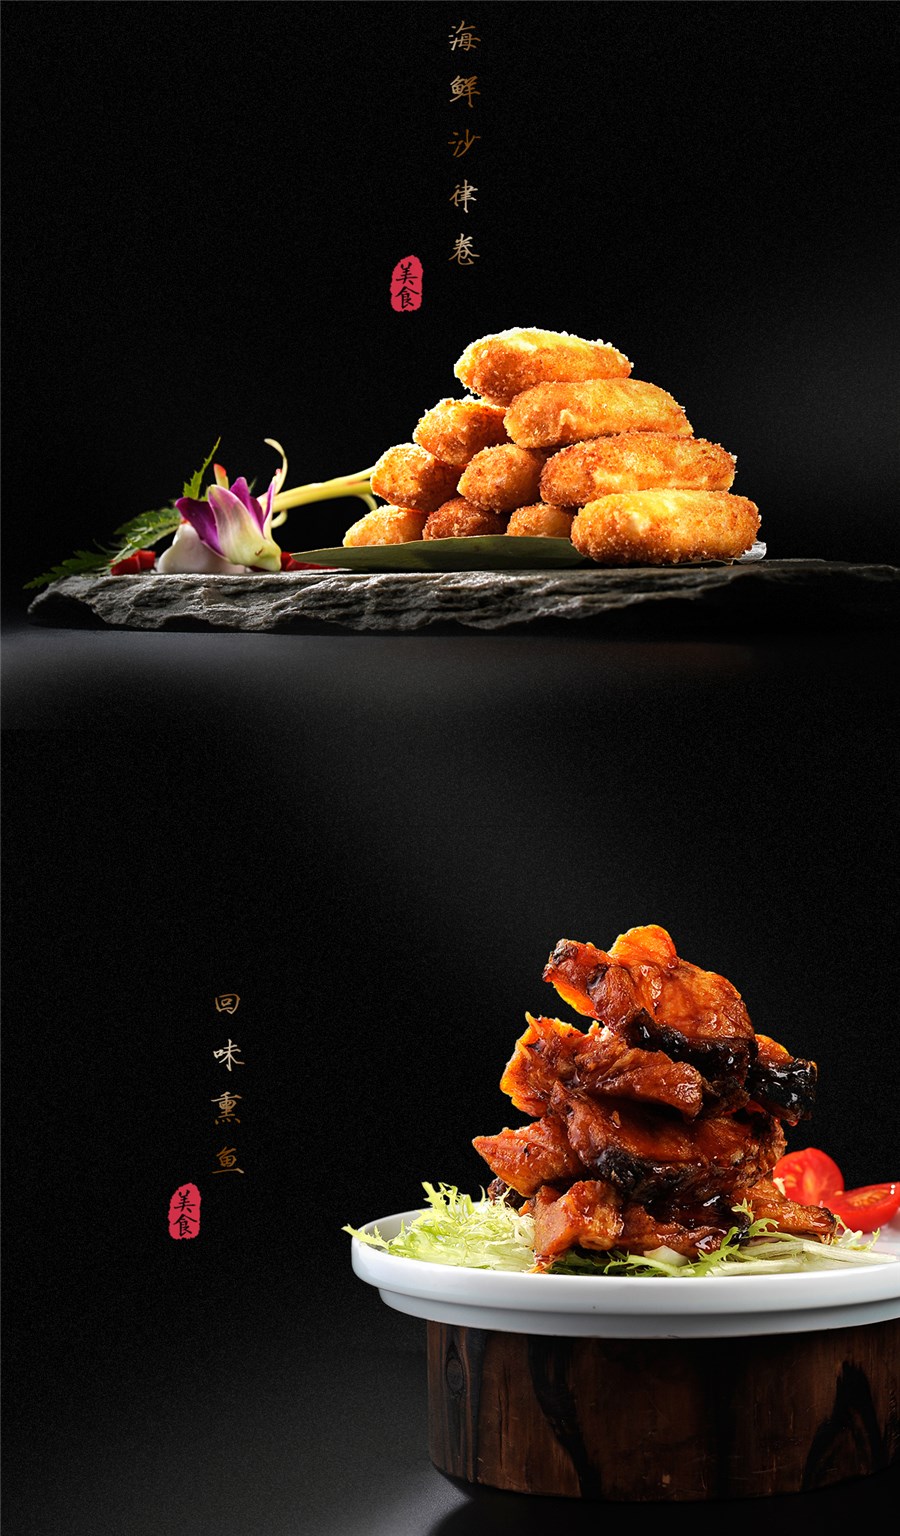 中式餐饮菜肴拍摄 菜谱摄影 菜单拍照设计